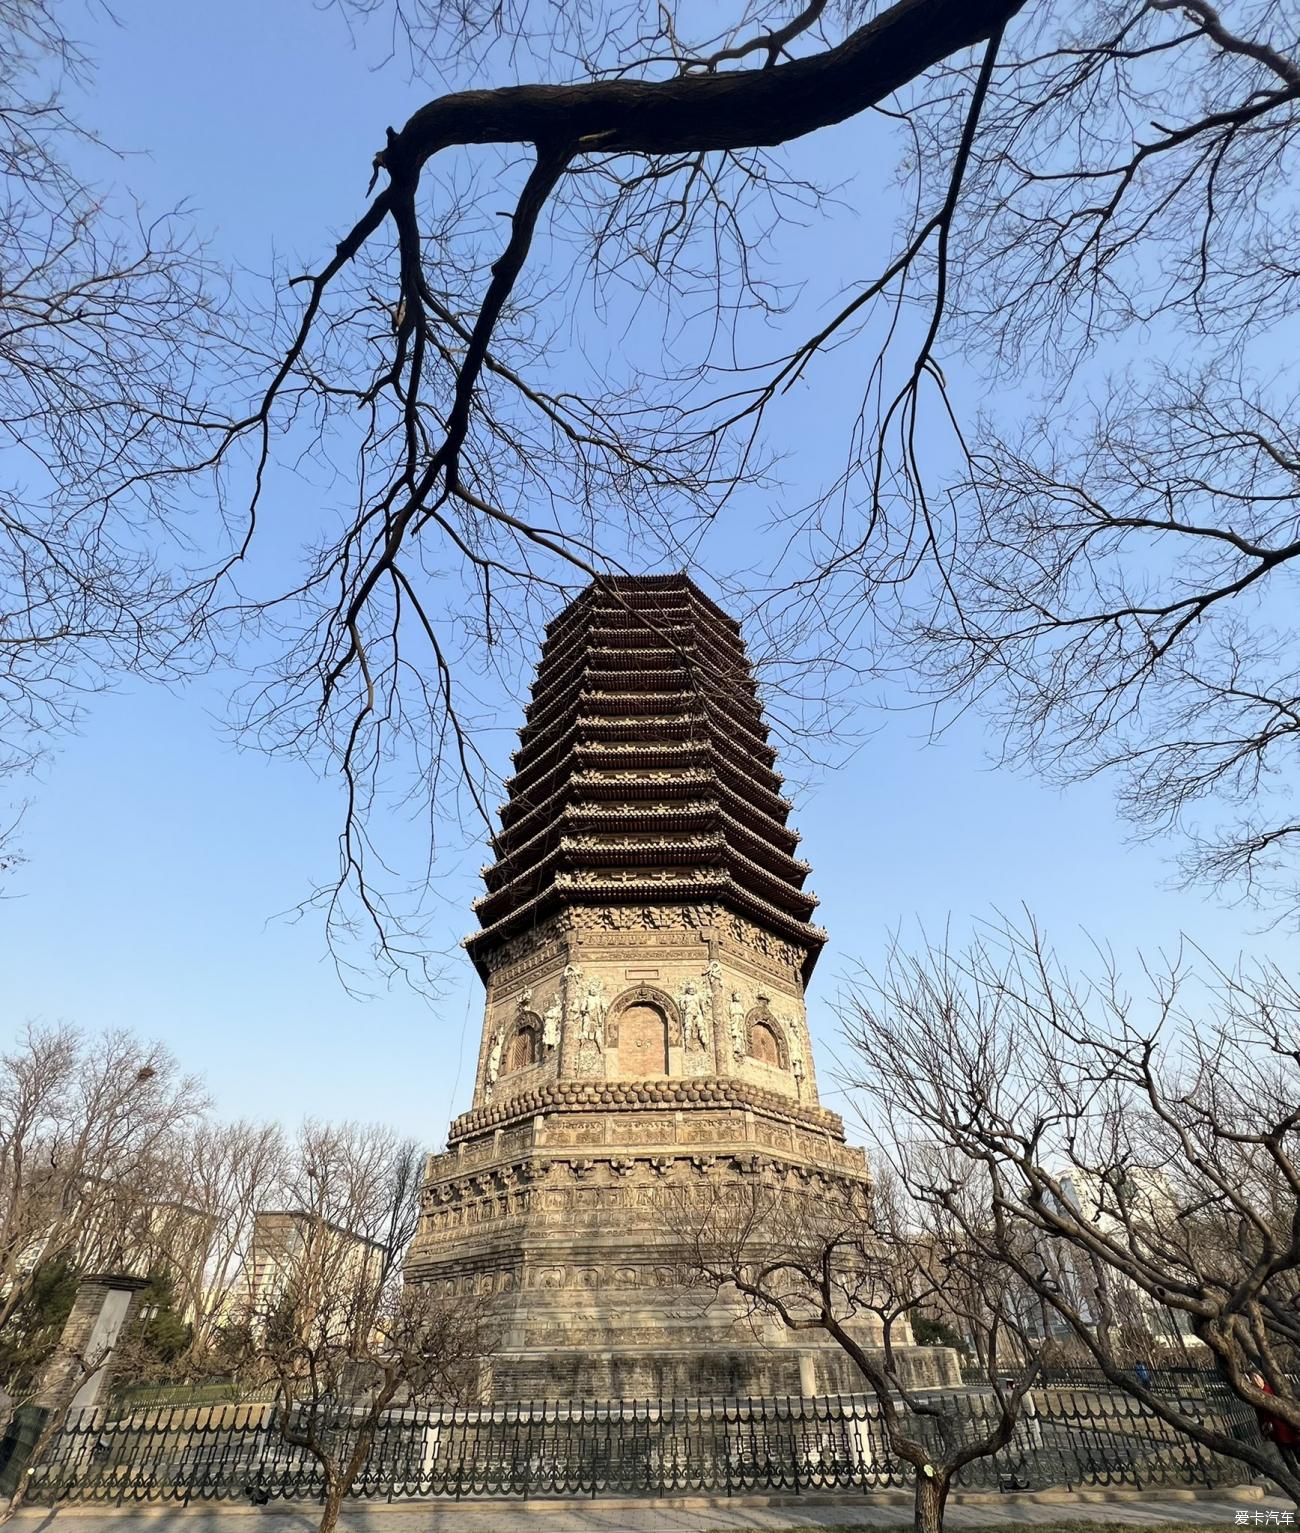 北京慈寿寺塔图片